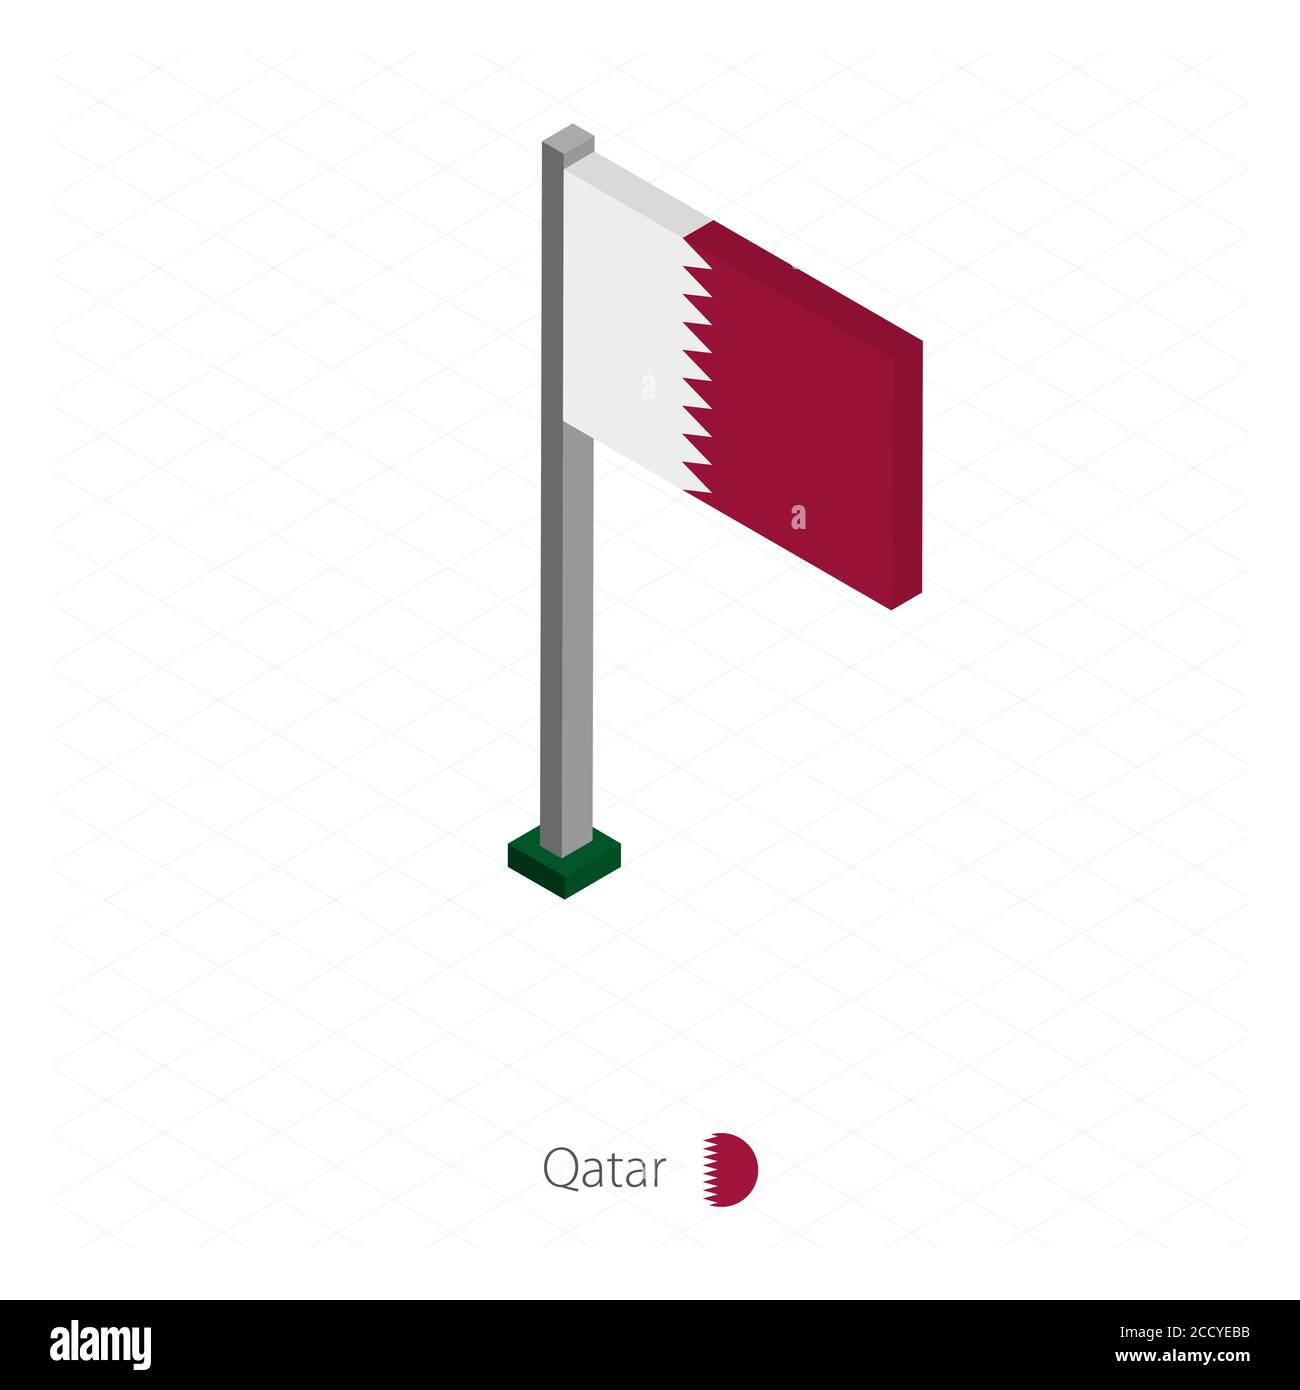 Katar Flagge auf Fahnenmast in Isometrischer Dimension. Isometrischer blauer Hintergrund. Vektorgrafik. Stock Vektor